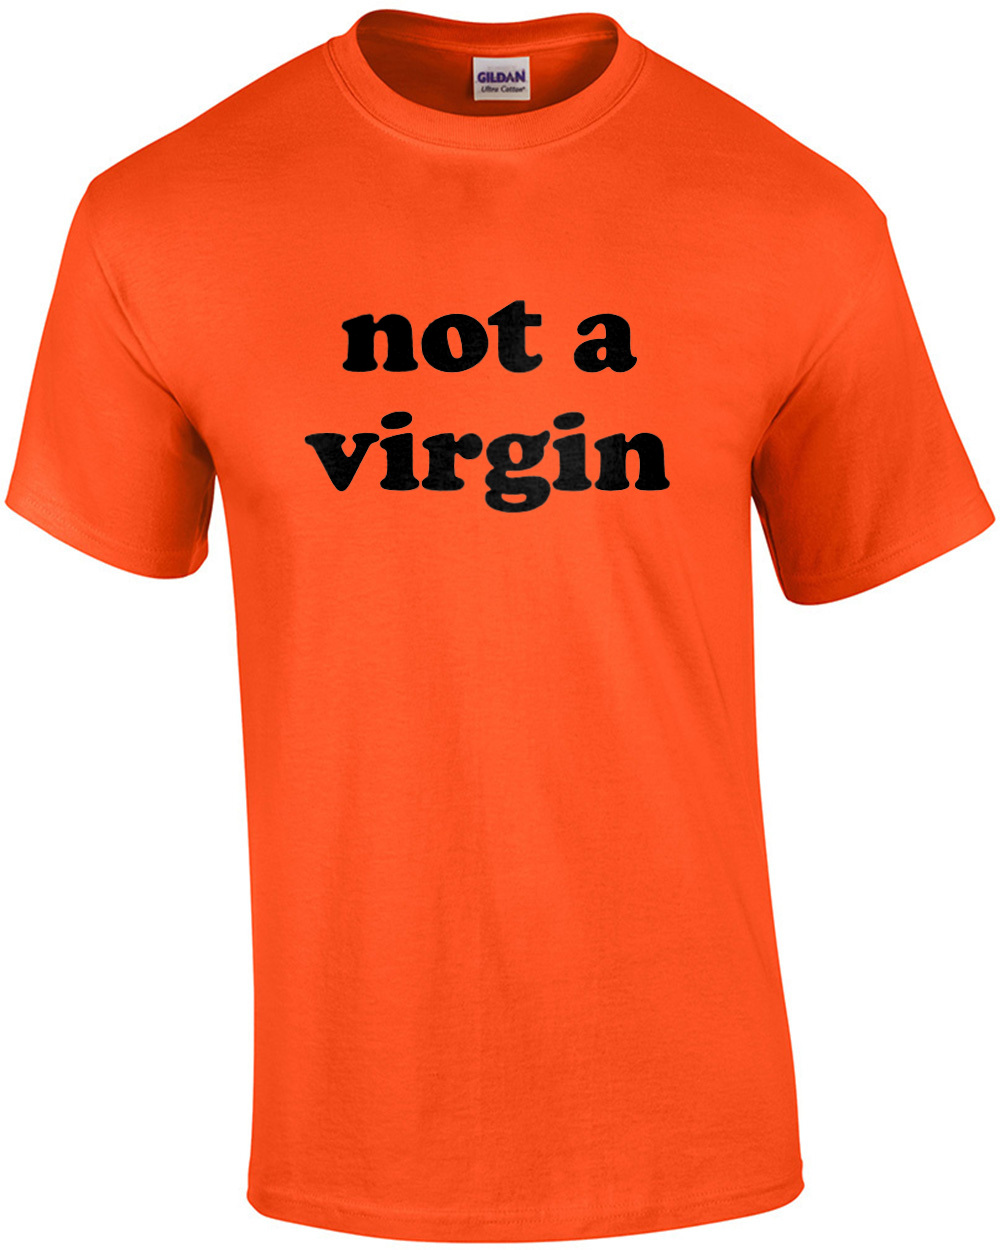 Not a Virgin - Funny T-Shirt